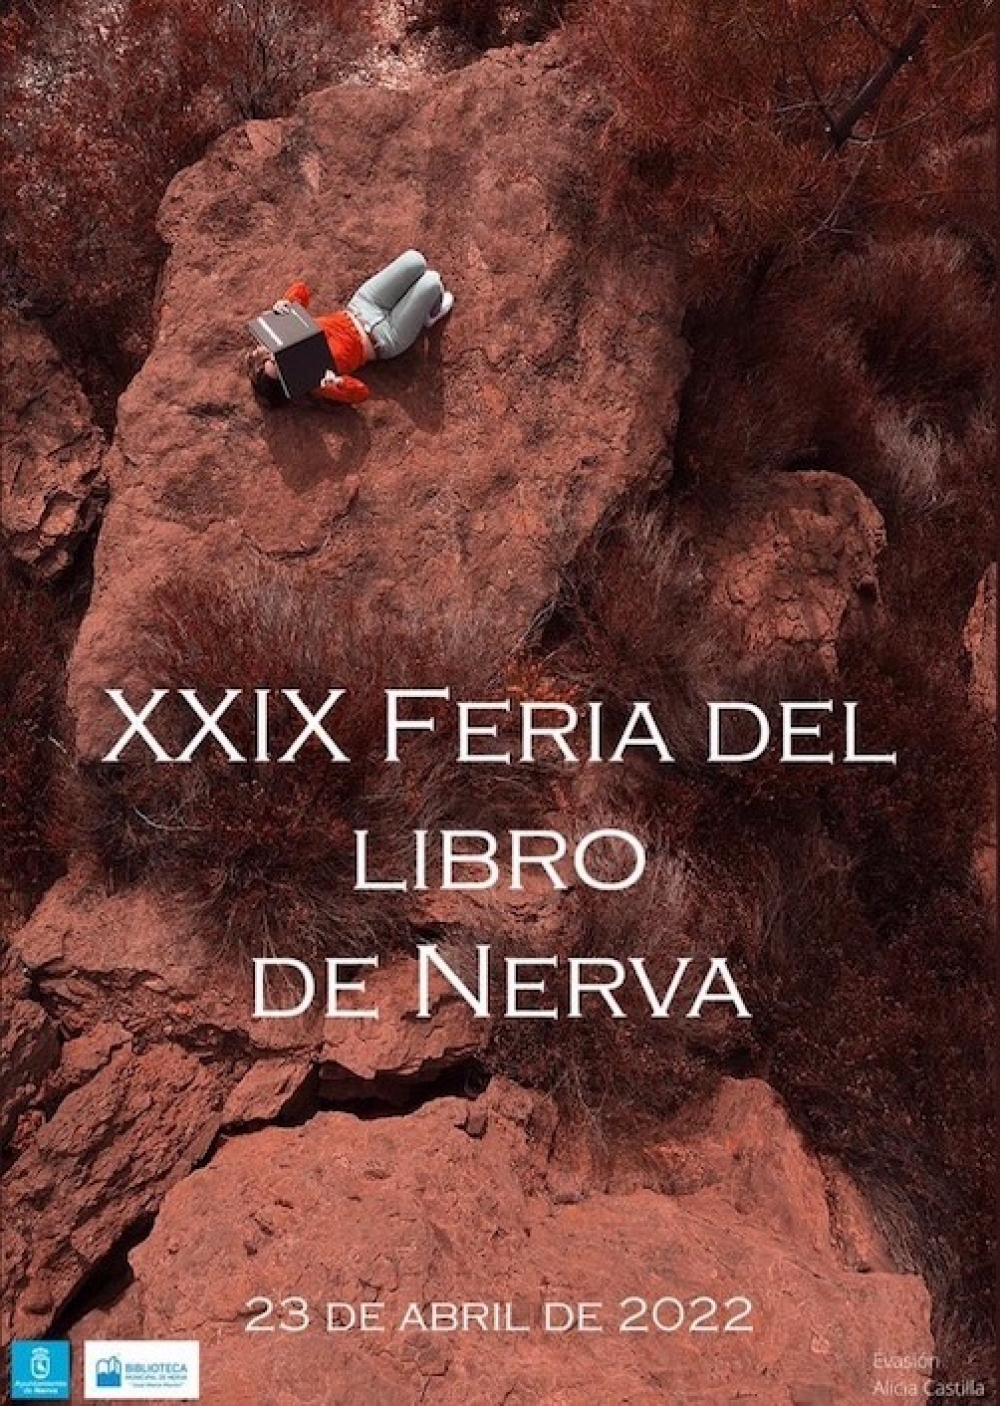 XXIX Feria del Libro de Nerva